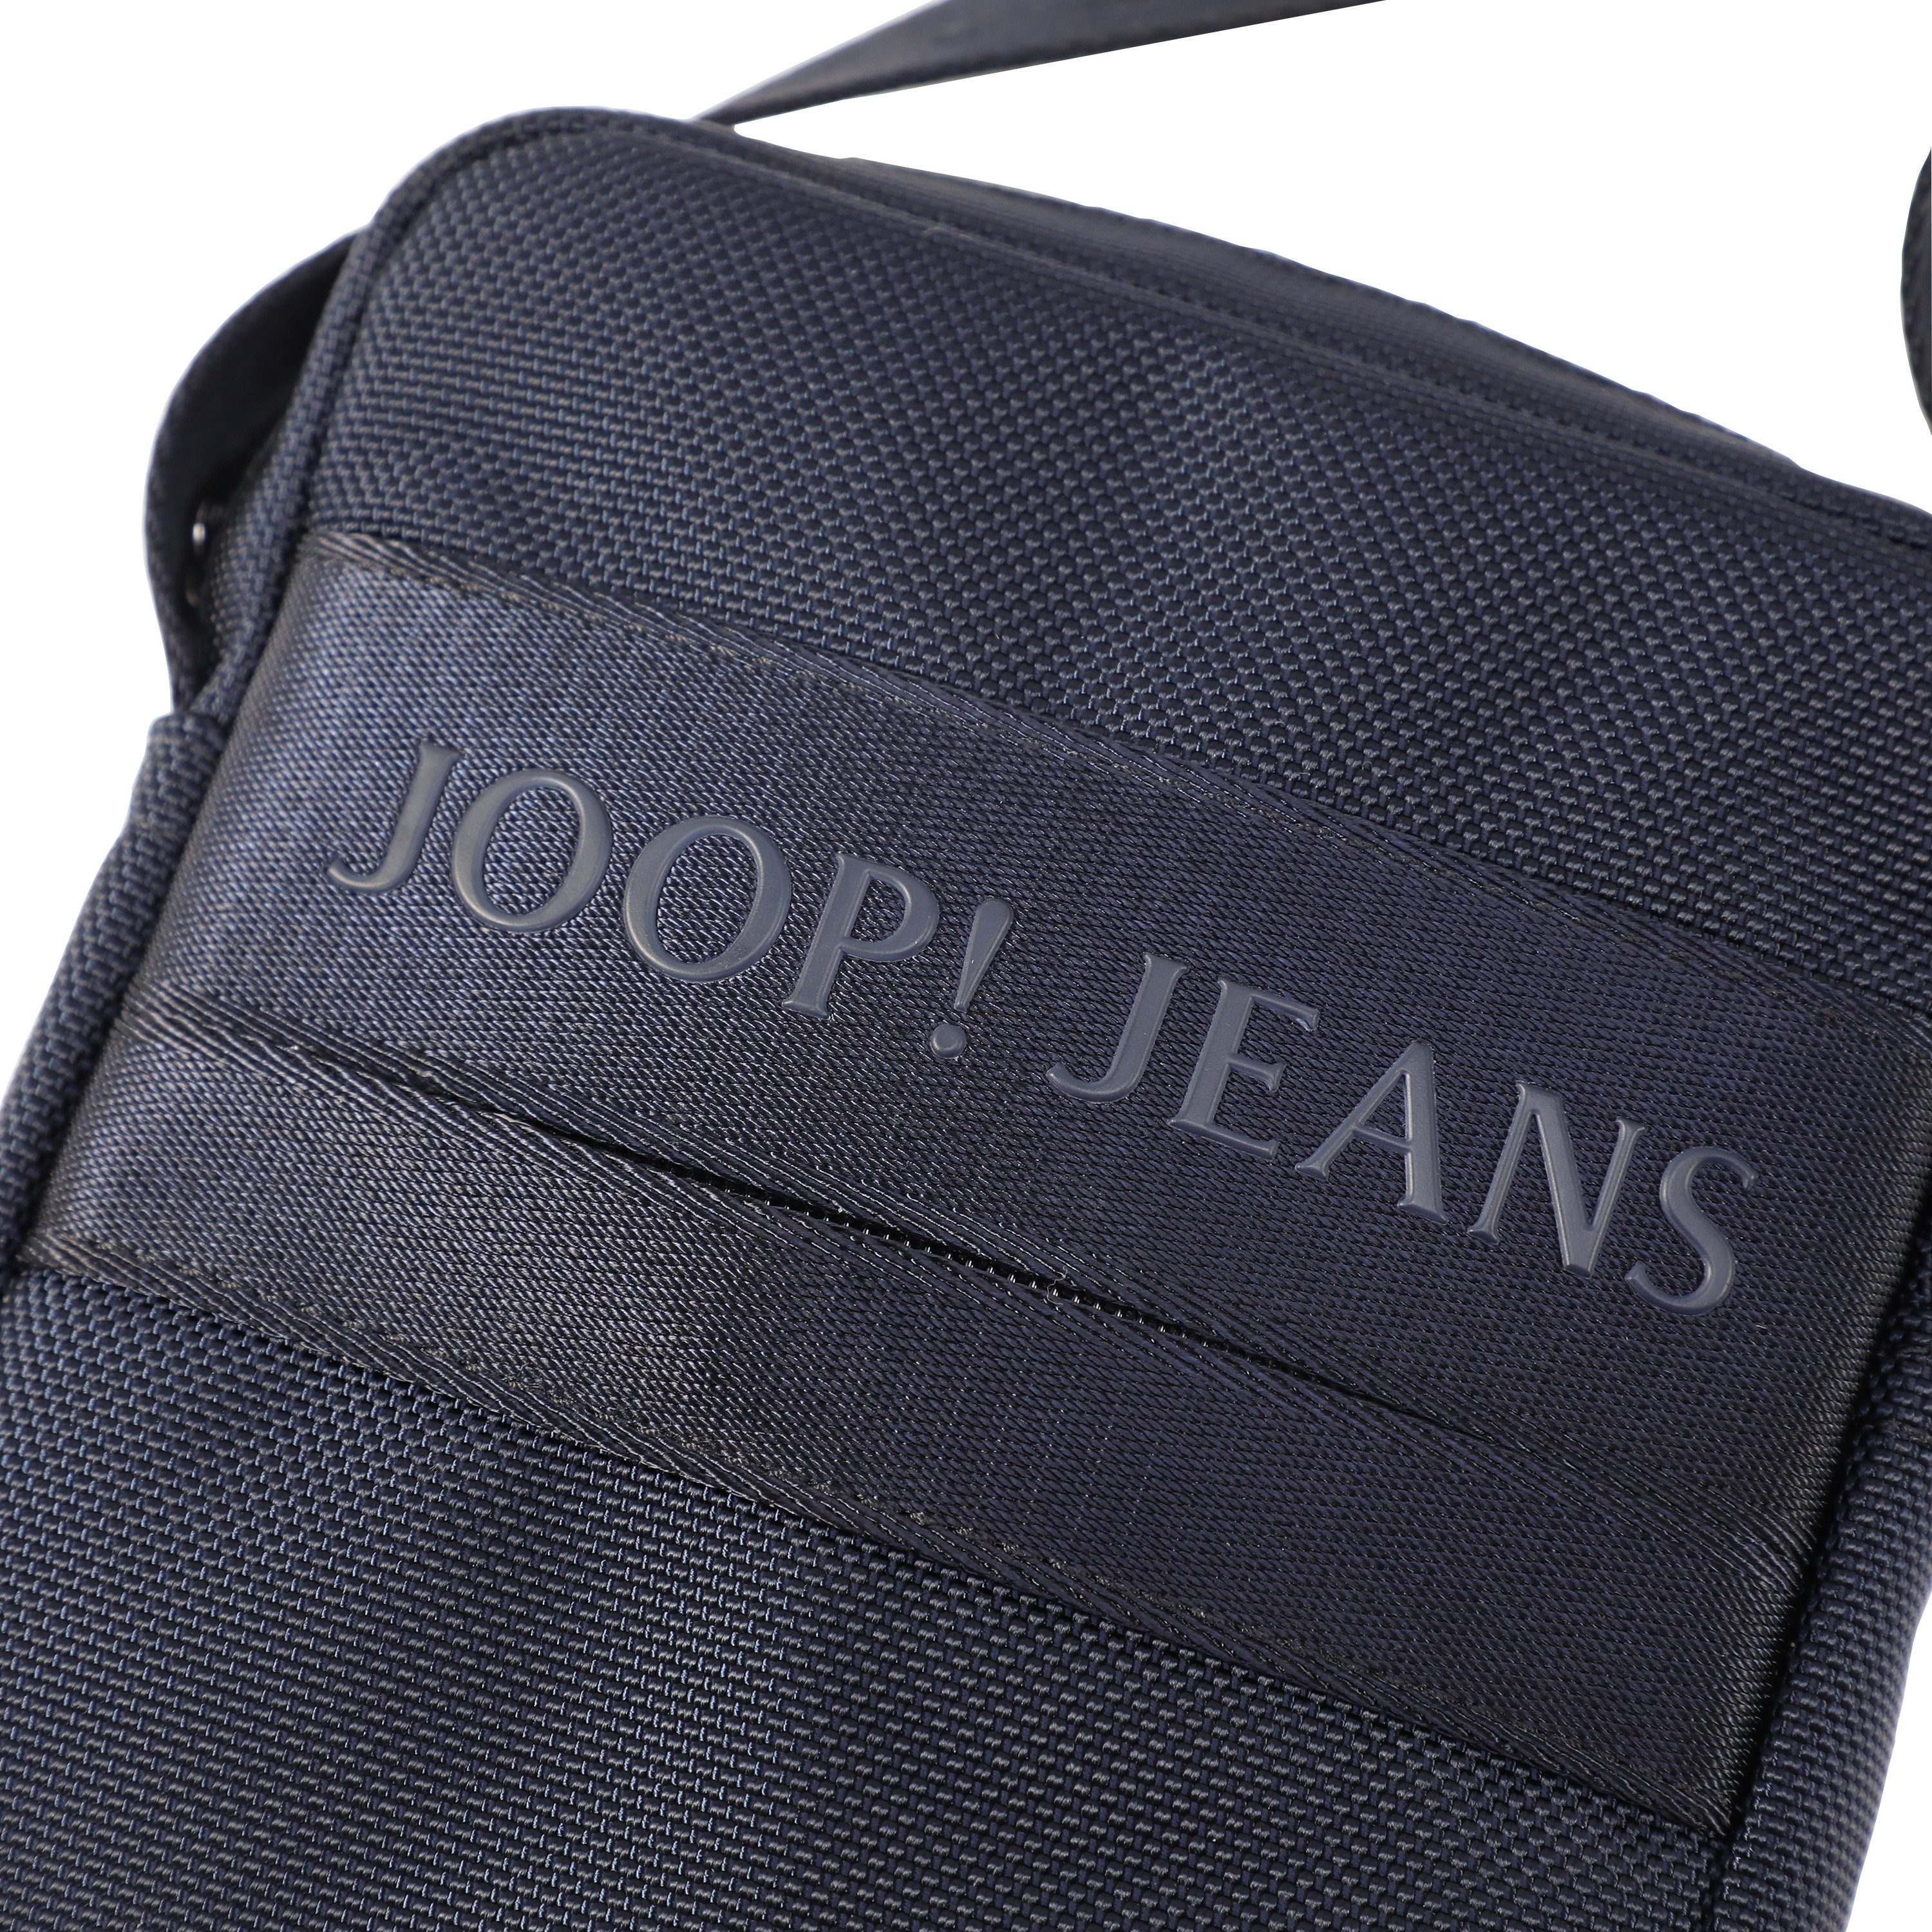 Joop Jeans Umhängetasche modica rafael shoulderbag dunkelblau Design xsvz, praktischen im